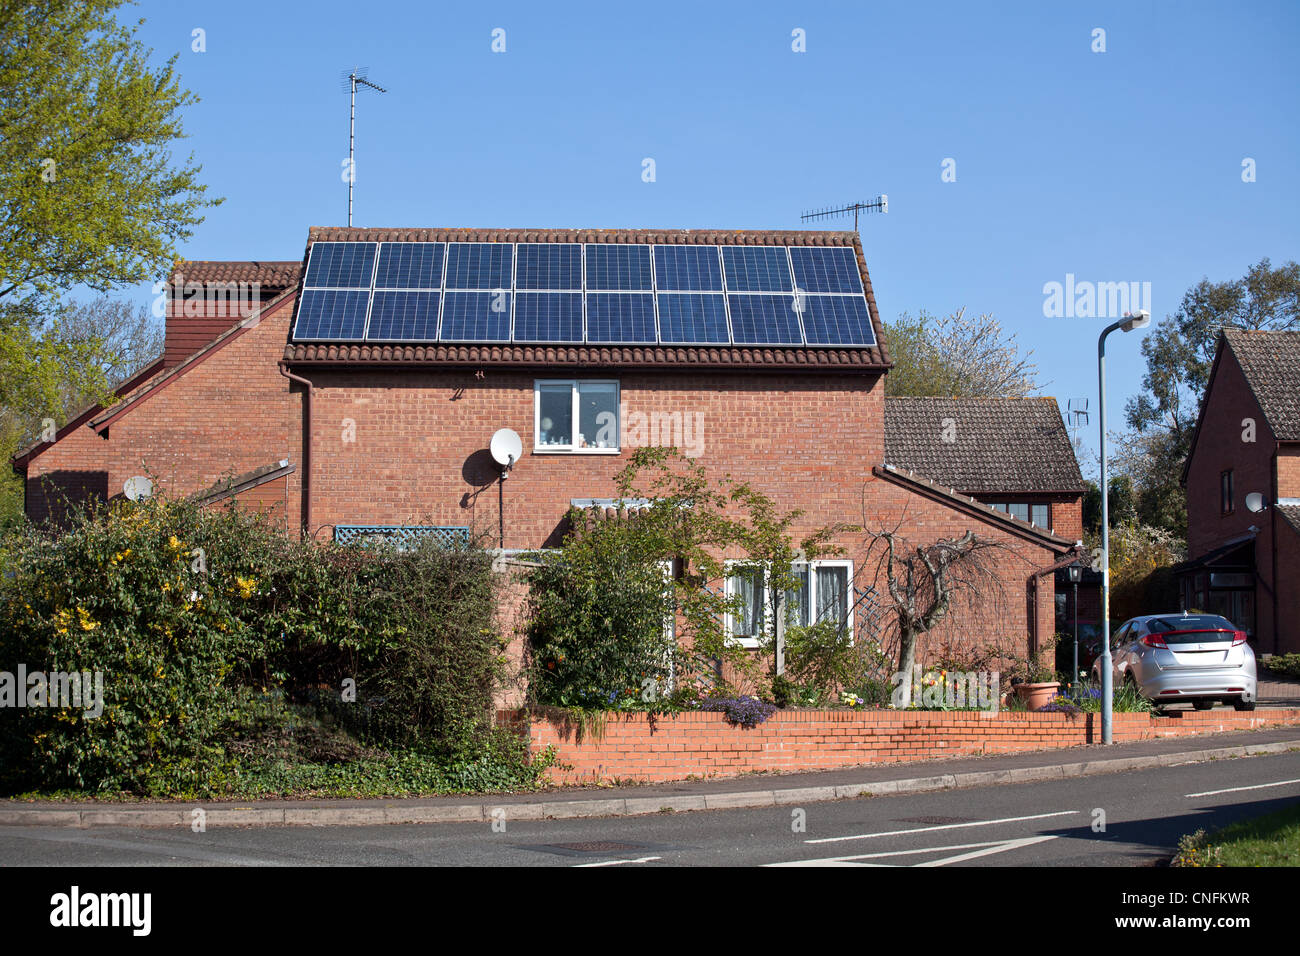 Los paneles solares fotovoltaicos en una casa residencial en Worcestershire, Reino Unido. Foto de stock